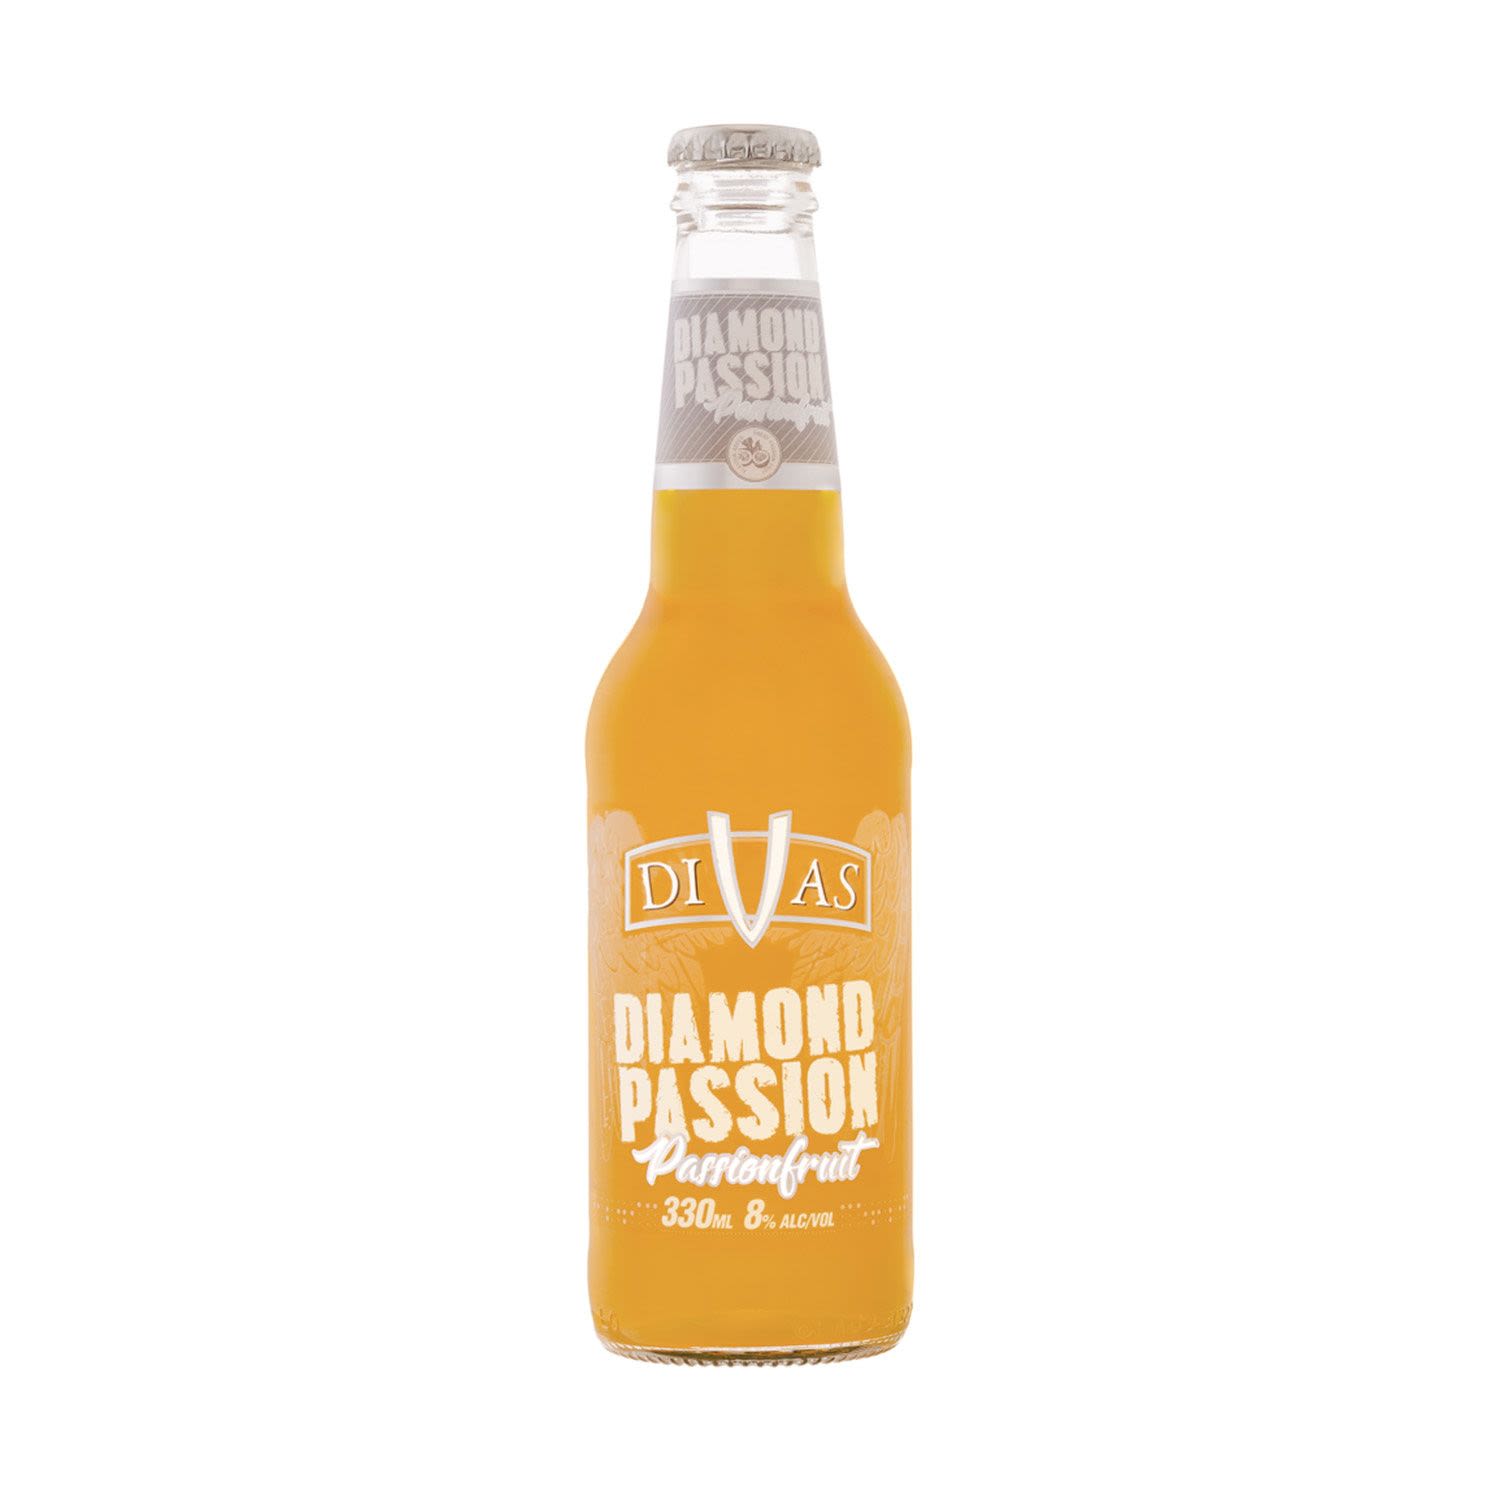 Divas Diamond Passion Passionfruit Bottle 330mL 24 Pack